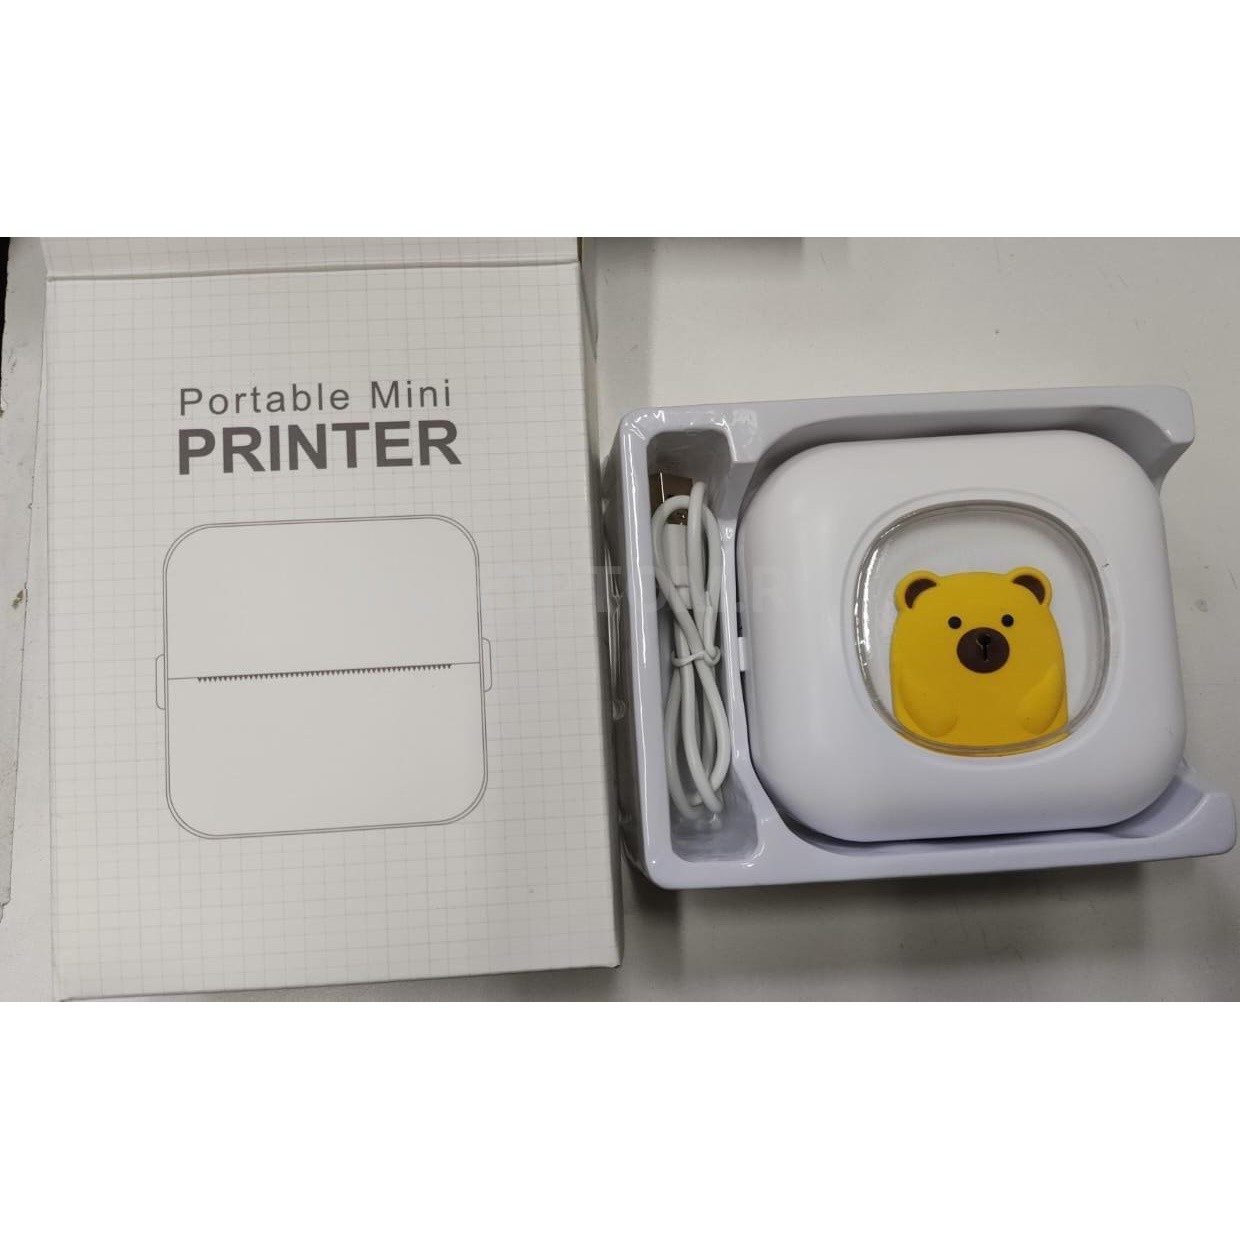 Принтер портативный карманный для печати Portable Mini Printer оптом